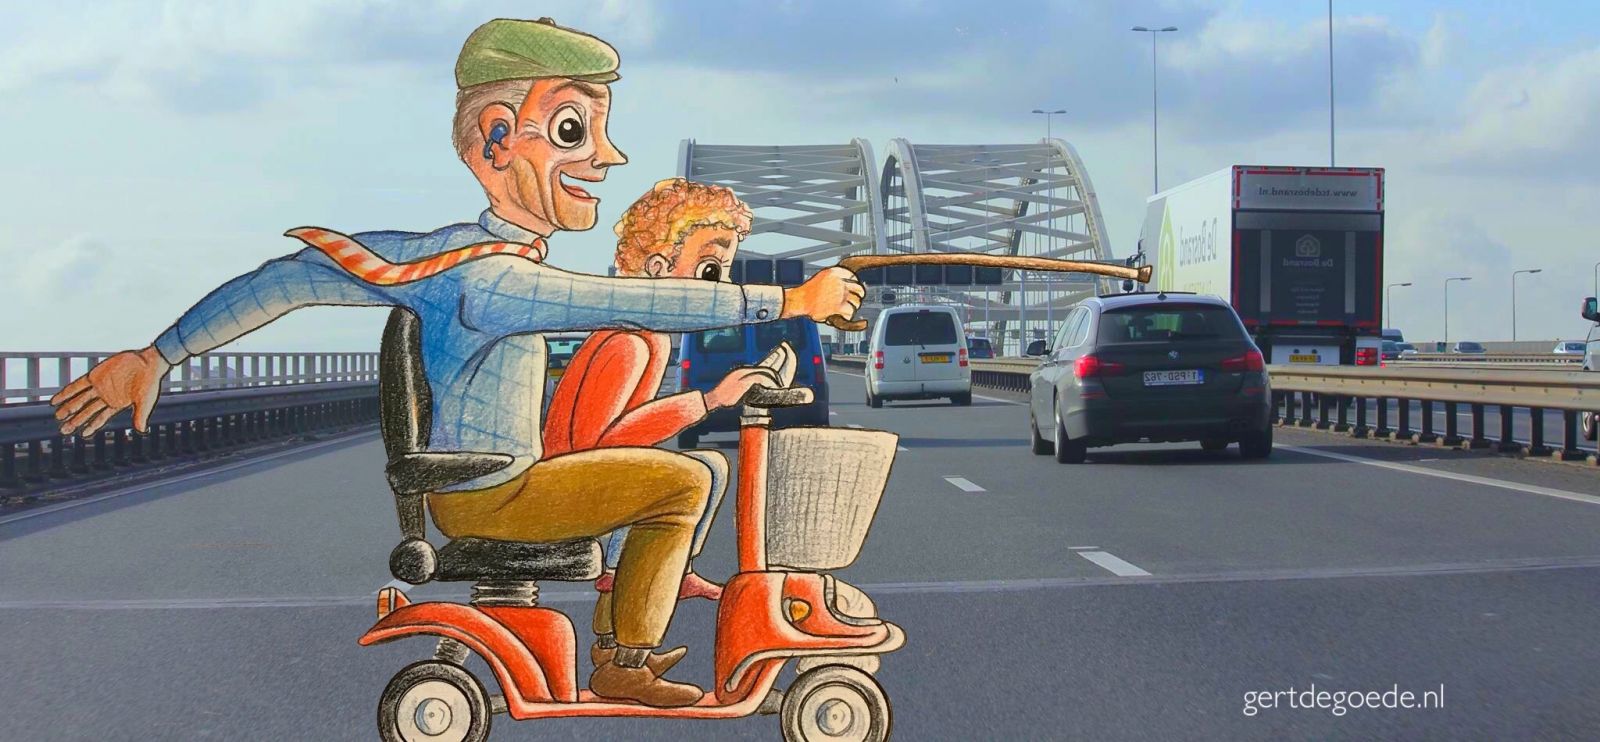 Gert de Goede illustrator illustratie Brienennoordbrug Rotterdam scootmobiel ude man kleinzoon vrolijk blij leuk